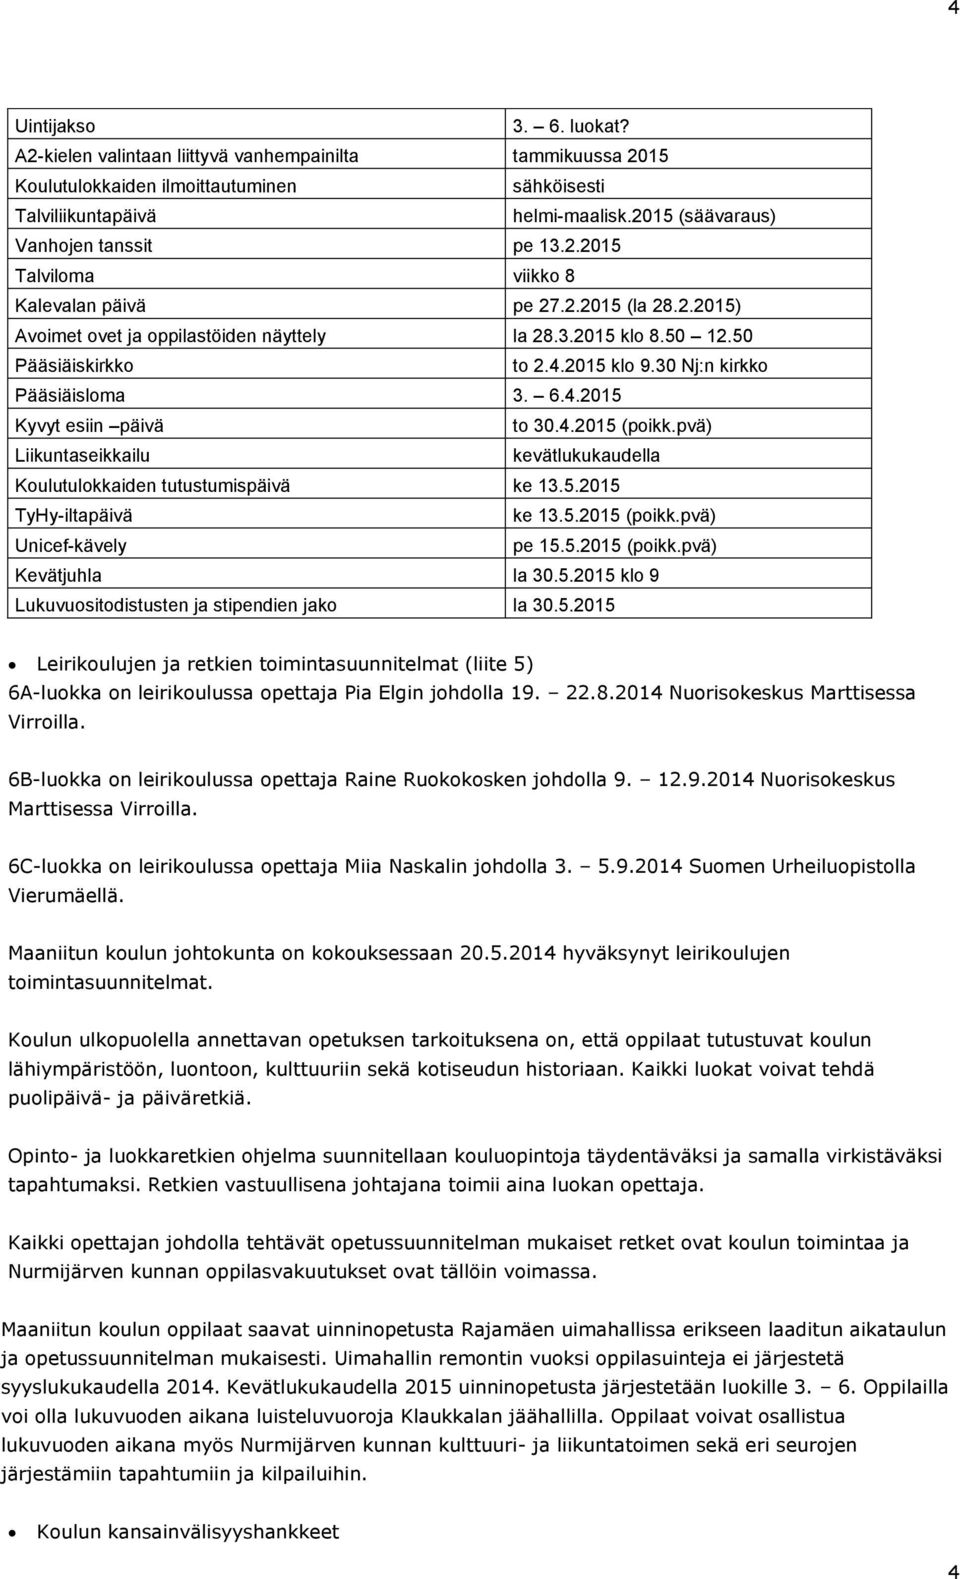 2015 klo 9.30 Nj:n kirkko Pääsiäisloma 3. 6.4.2015 Kyvyt esiin päivä to 30.4.2015 (poikk.pvä) Liikuntaseikkailu kevätlukukaudella Koulutulokkaiden tutustumispäivä ke 13.5.2015 TyHy-iltapäivä ke 13.5.2015 (poikk.pvä) Unicef-kävely pe 15.